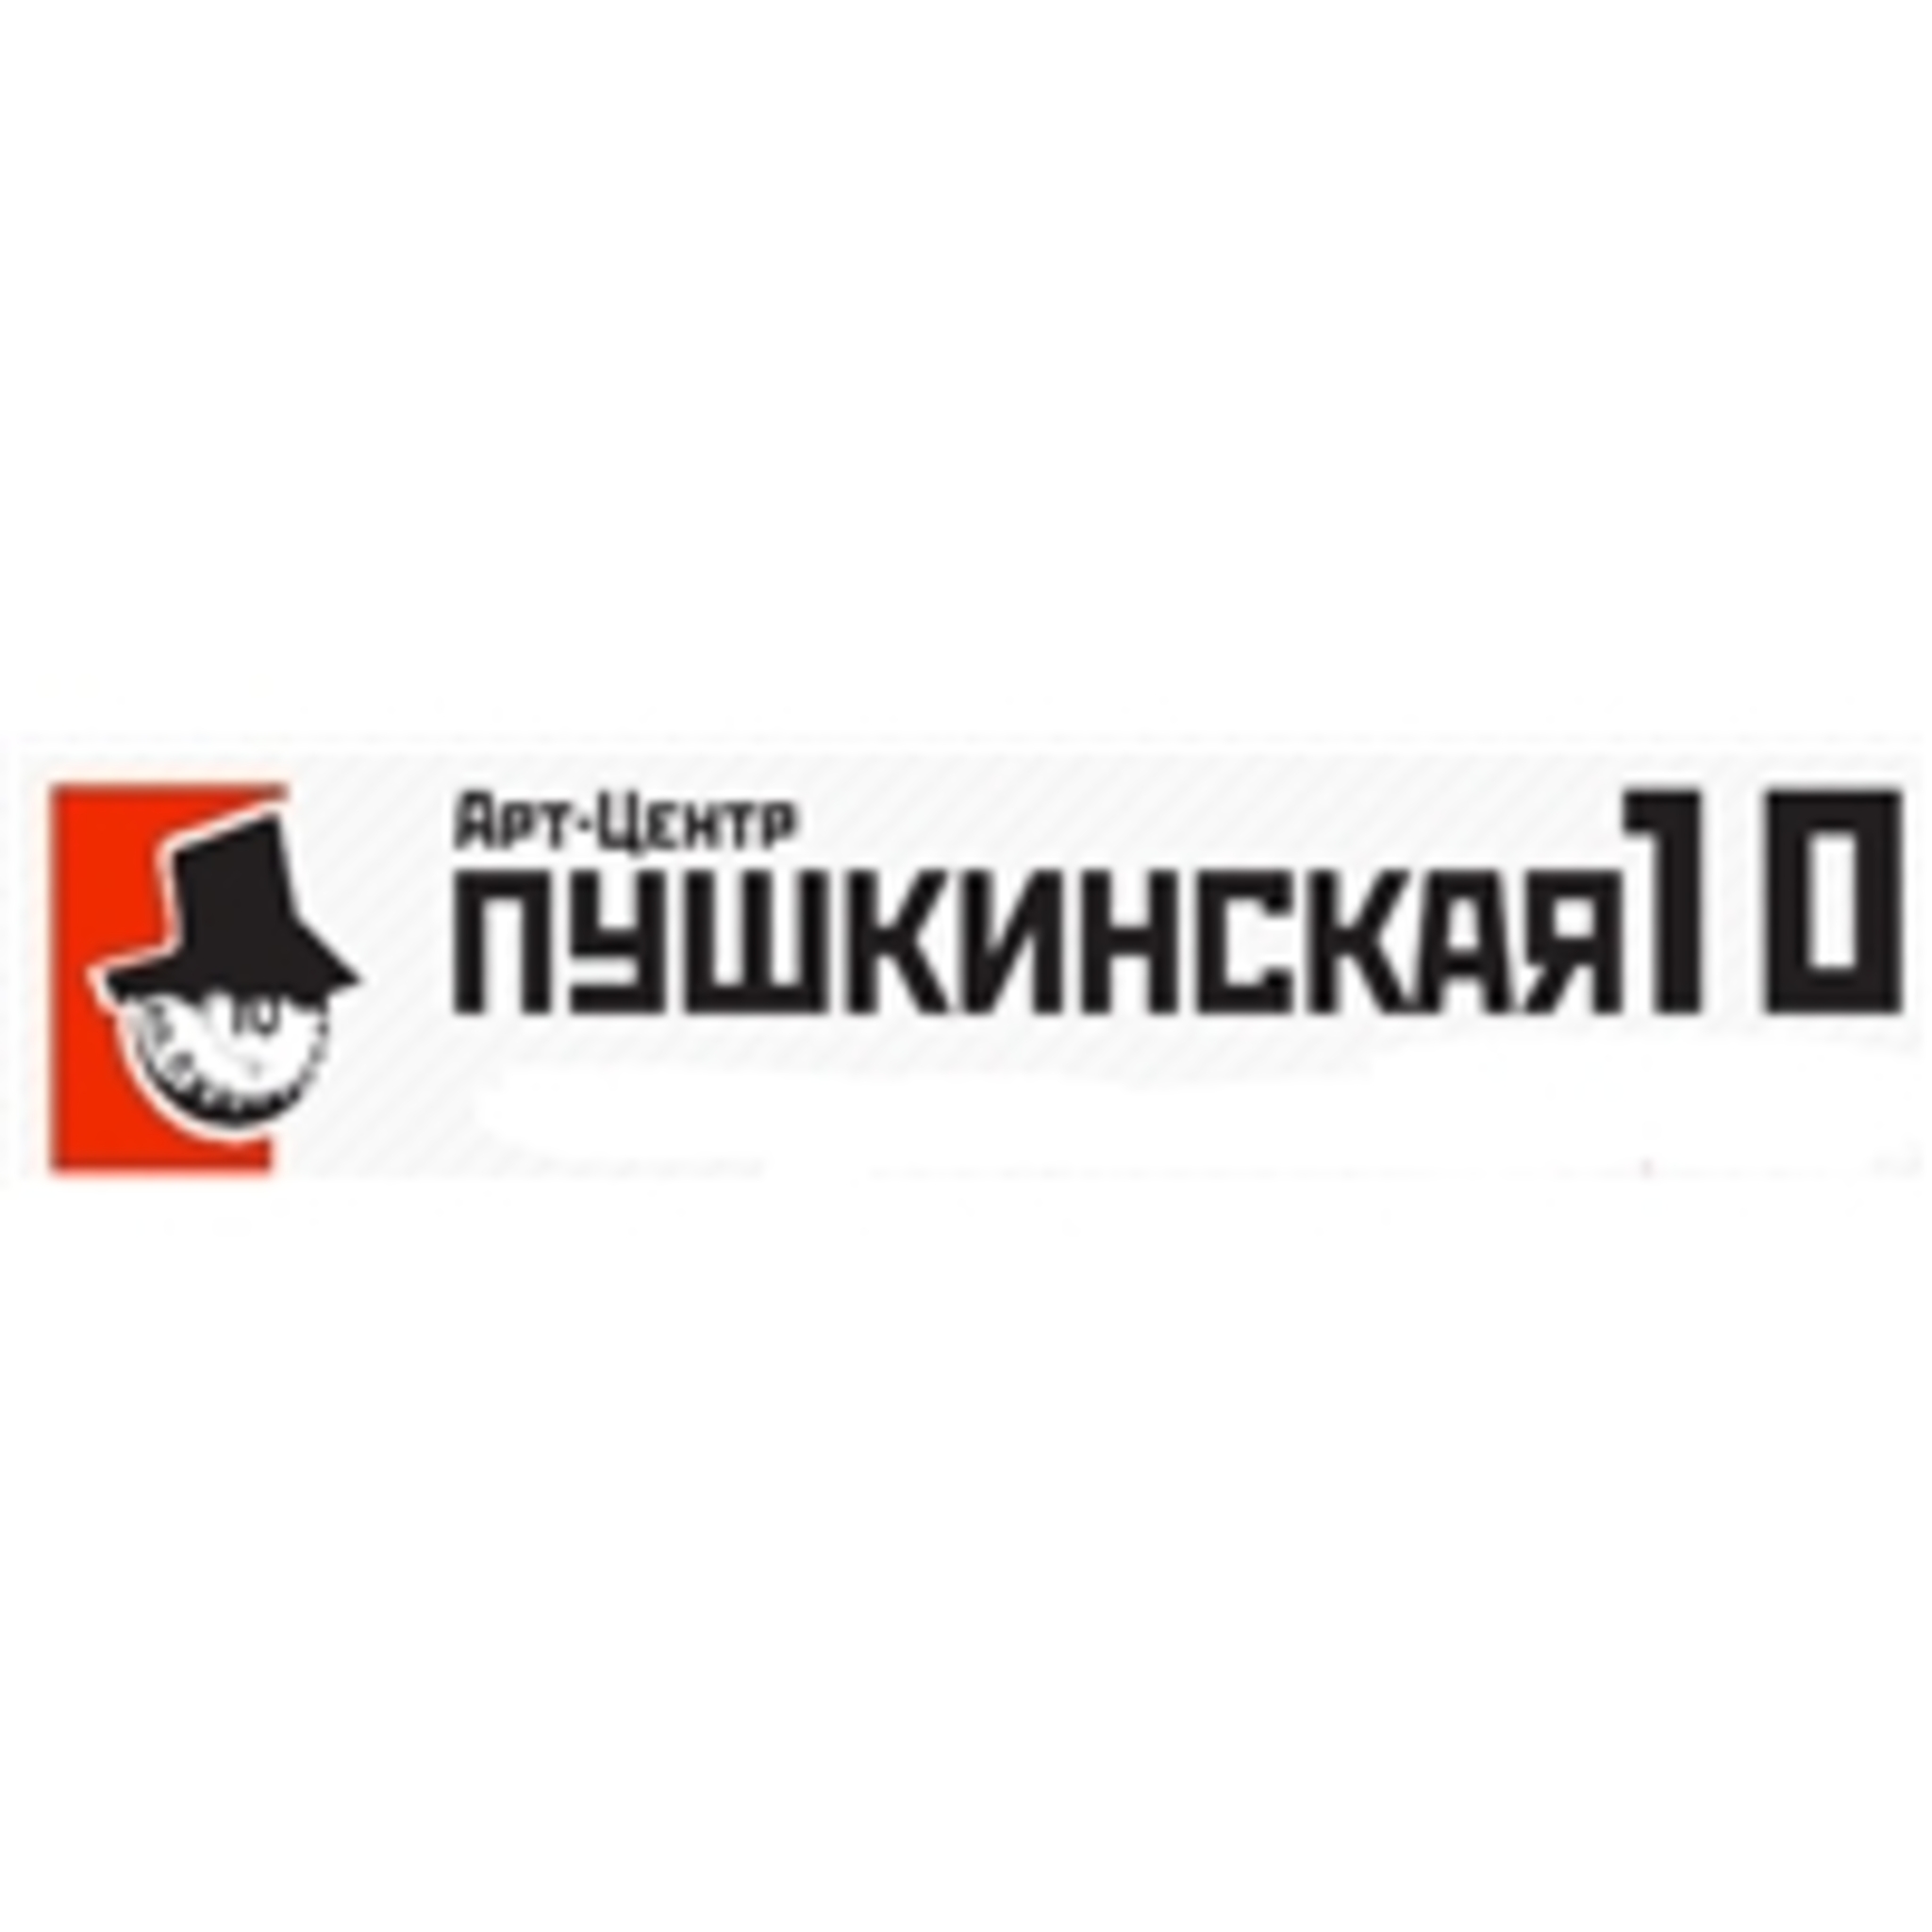 Upcoming Events Art Center Pushkinskaya 10